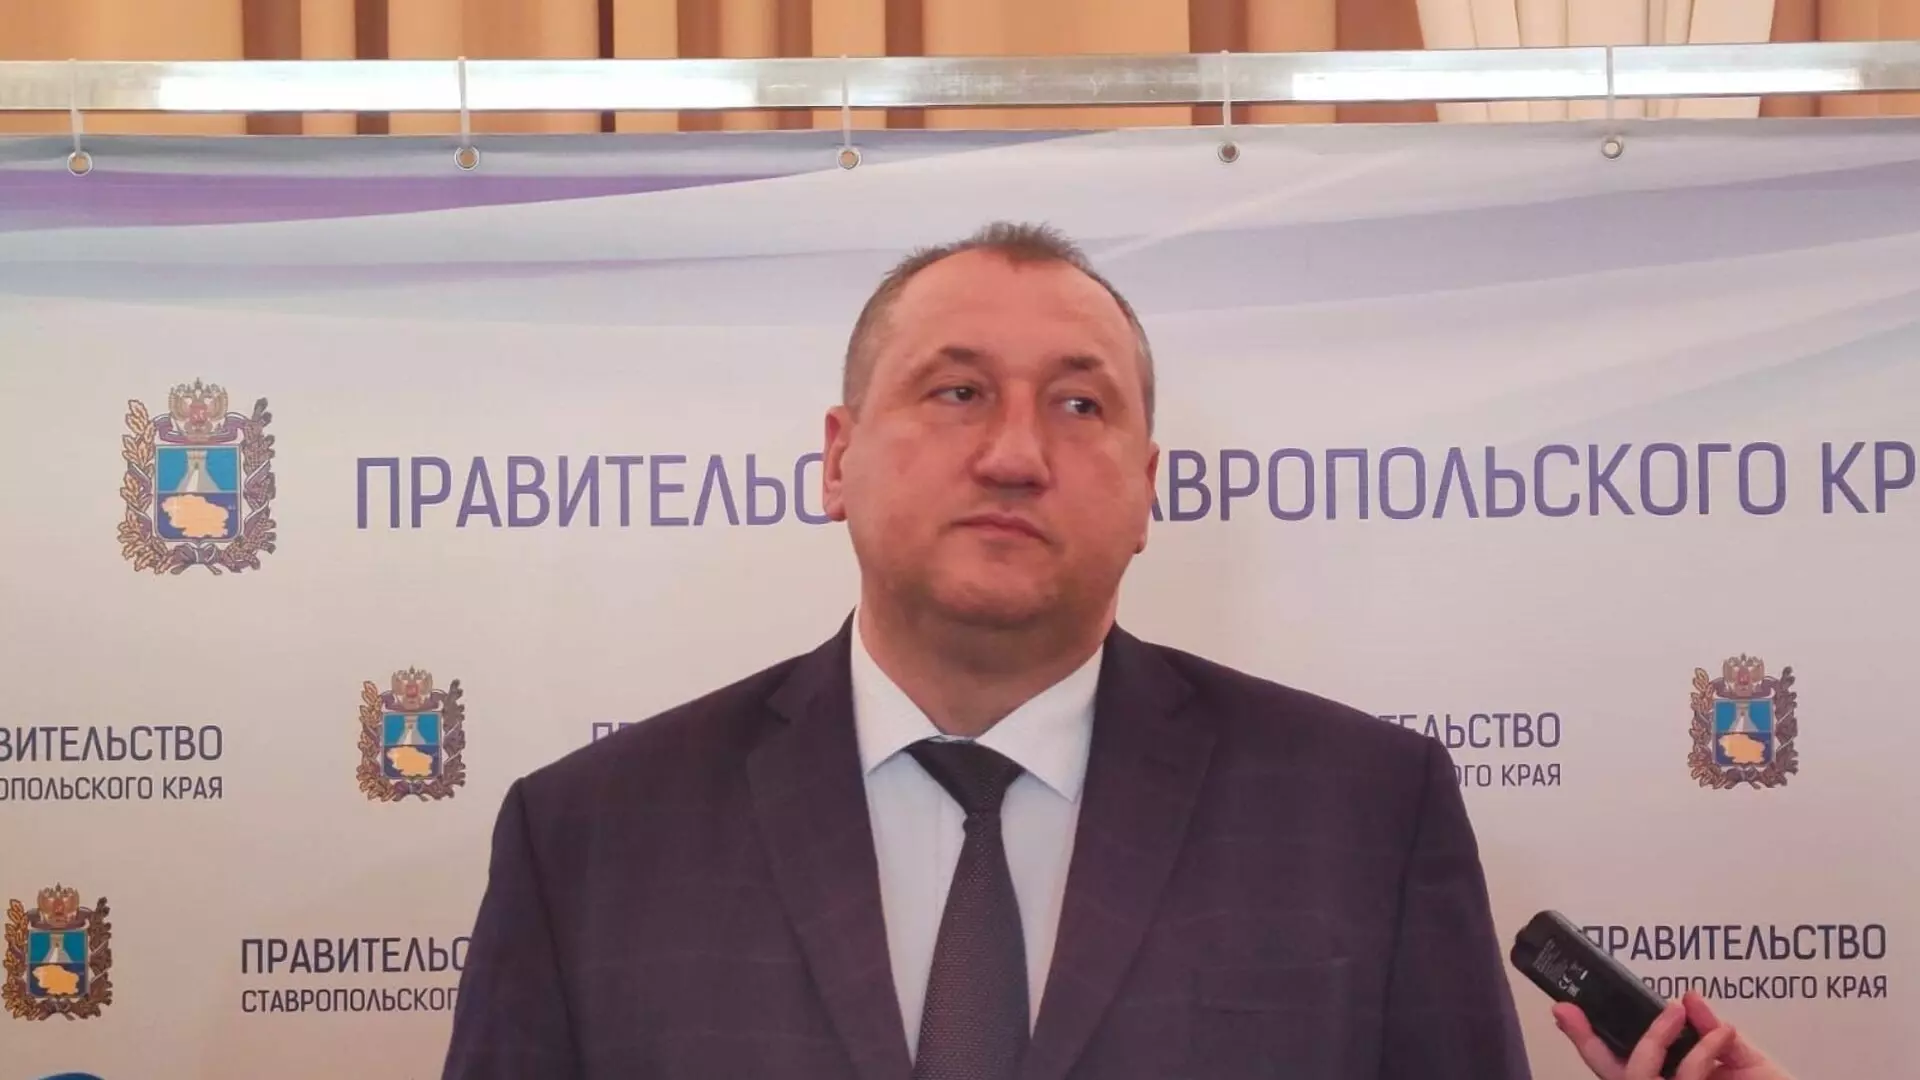 В минувшем месяце министр здравоохранения Ставропольского края Юрий Литвинов на открытой встрече рапортовал, что лекарственное обеспечение больных диабетом в регионе находится на высоком уровне.